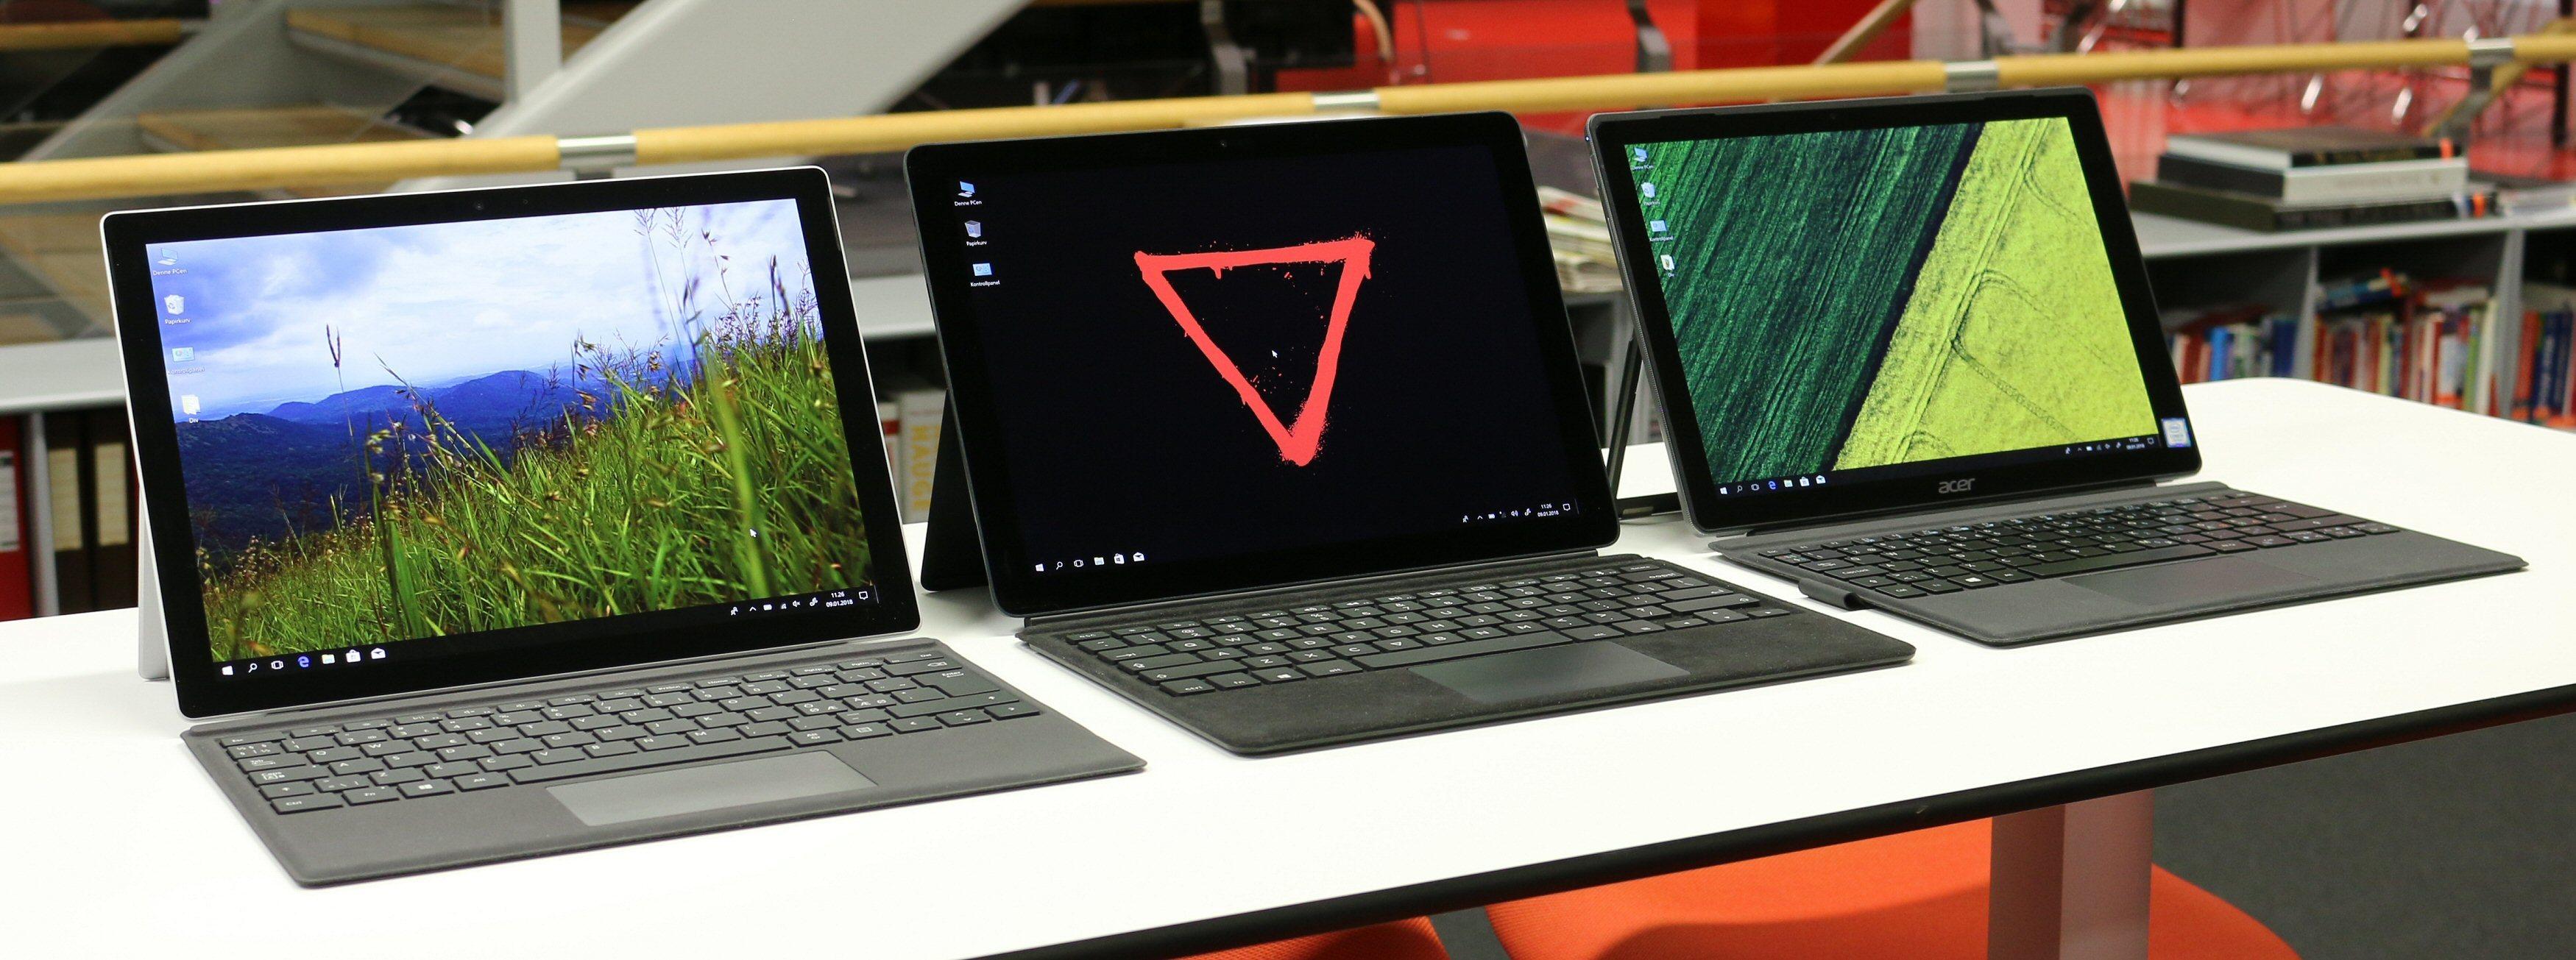 Fra venstre: Microsoft Surface Pro, Eve-Tech Eve V og Acer Switch 5. Bilde: Vegar Jansen, Tek.no